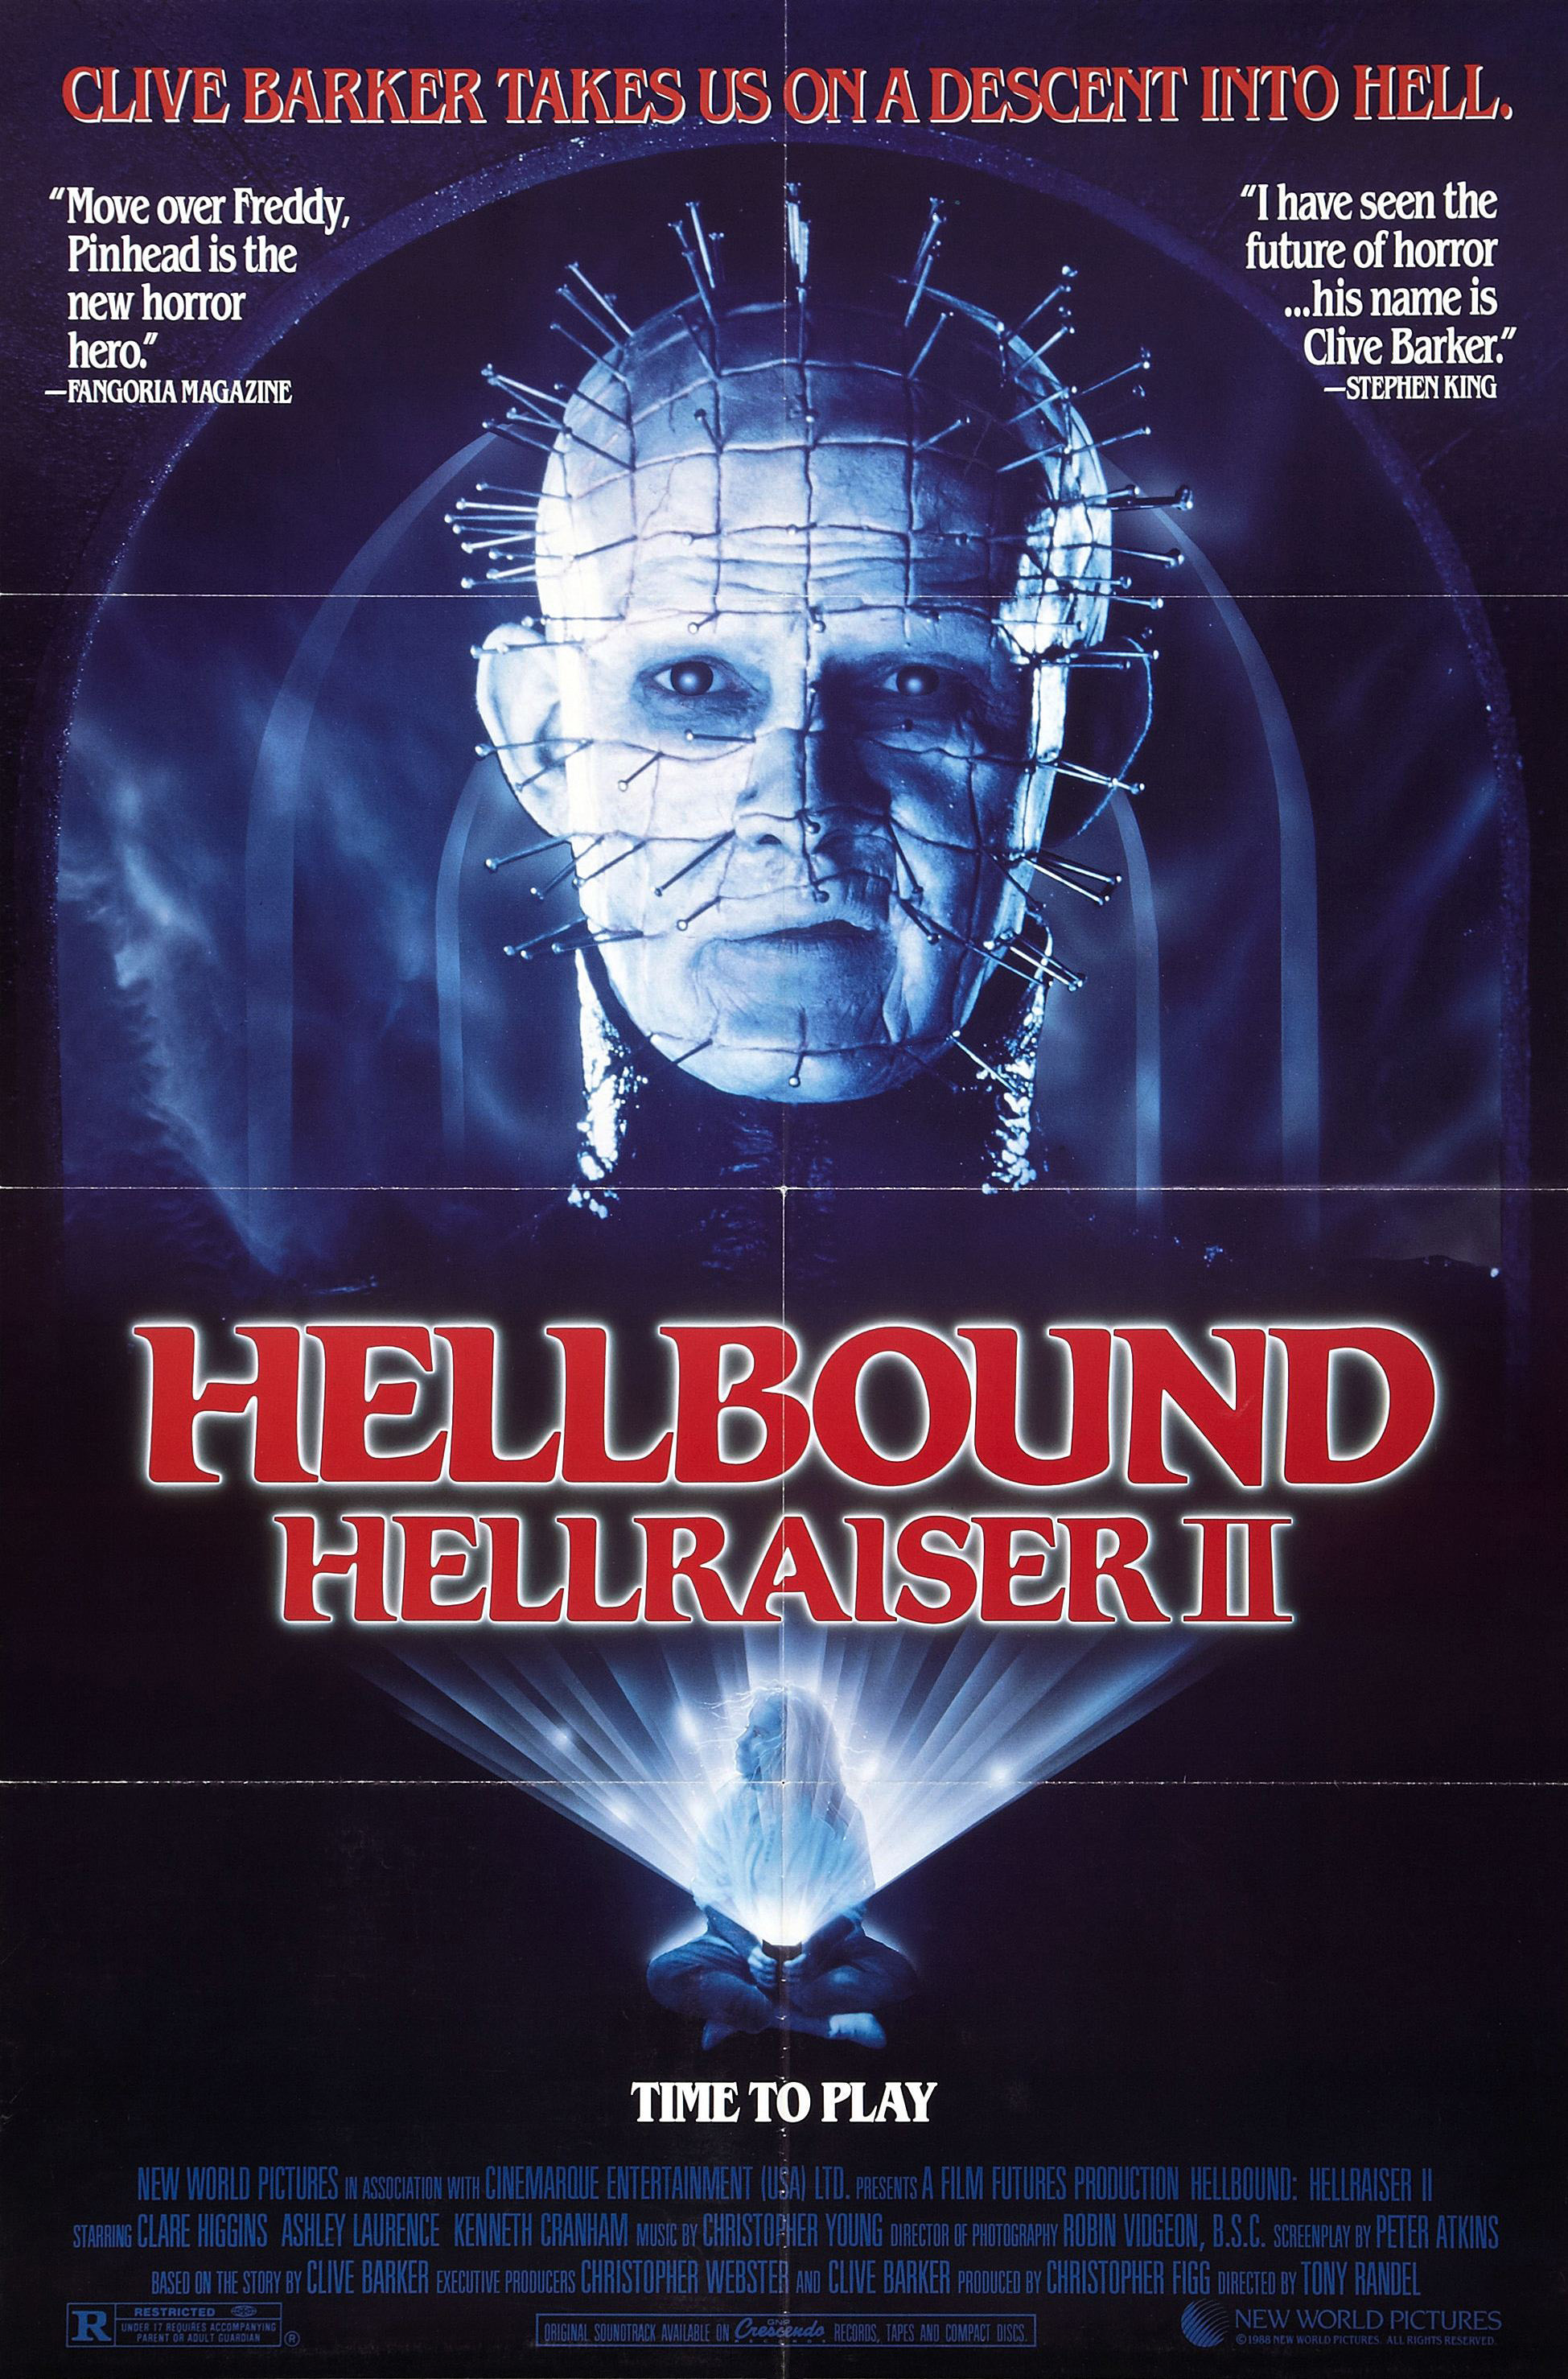 Hellbound Hellraiser Ii Widescreen Wallpapers 3 
 Data - Hellbound Hellraiser Ii 1988 Movie Poster - HD Wallpaper 